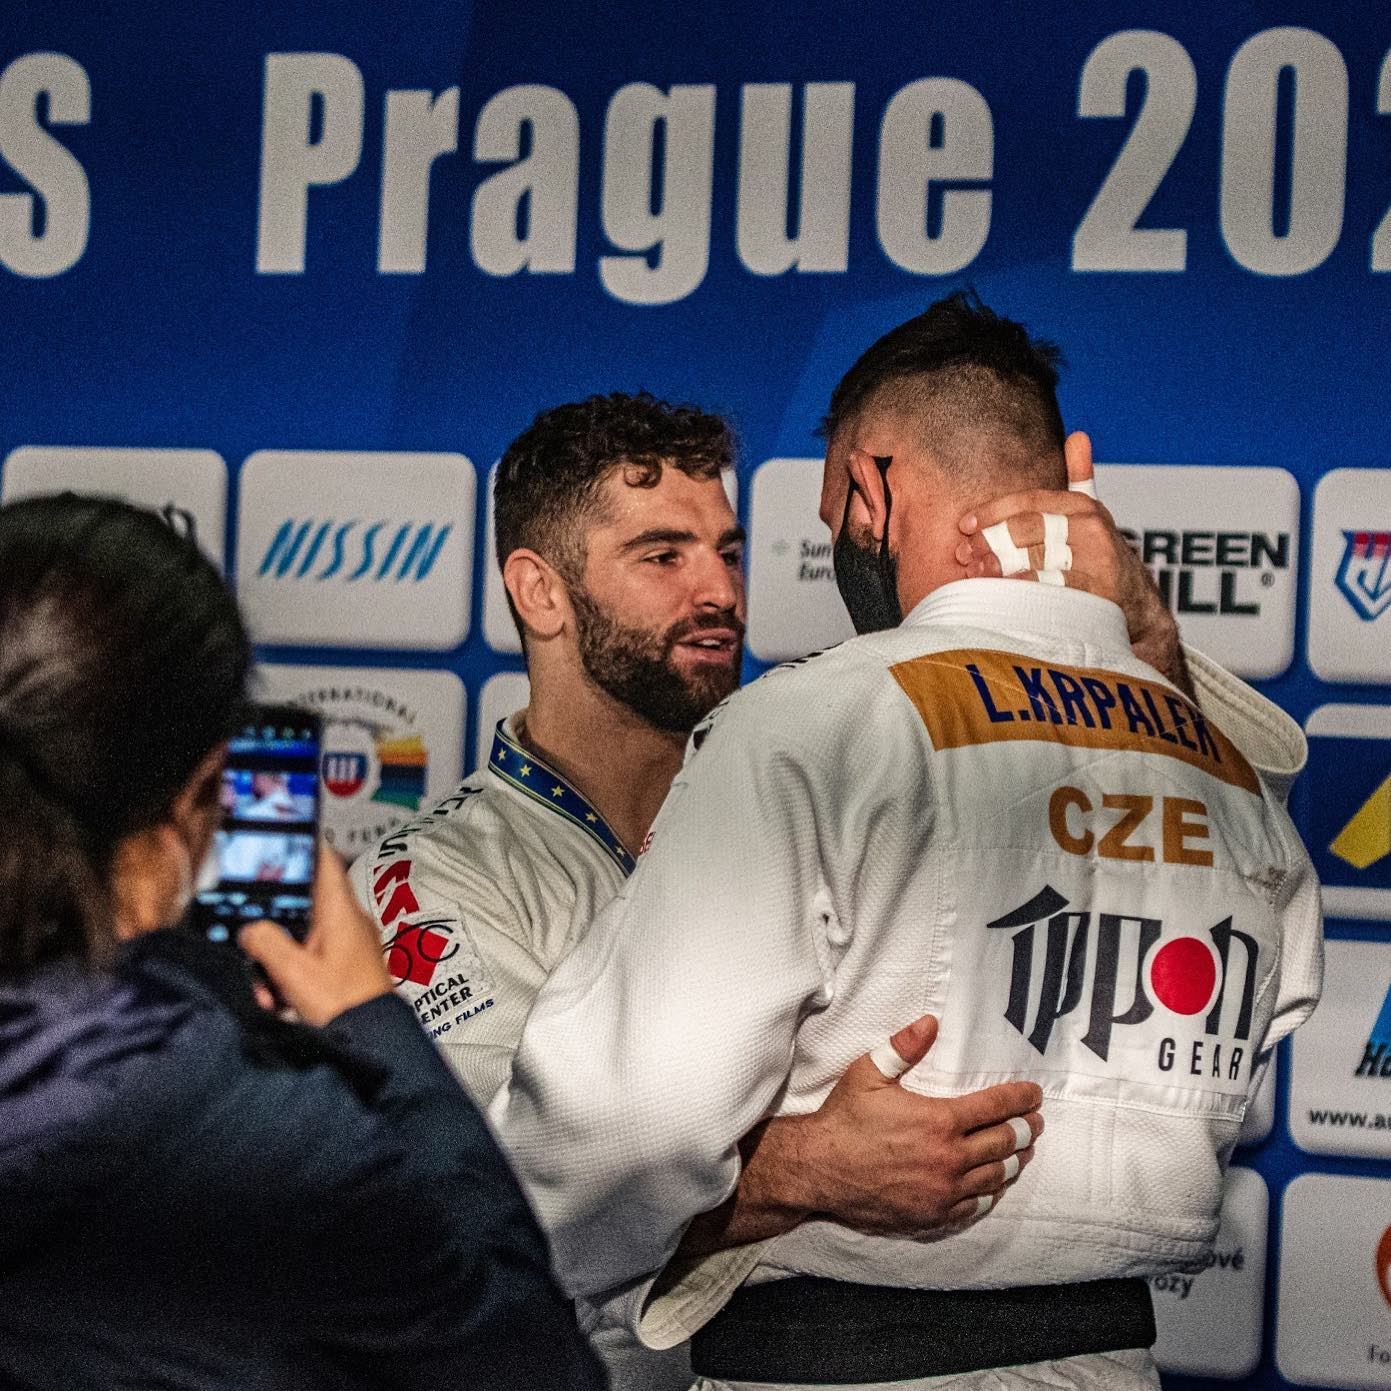 FOTO: České judo